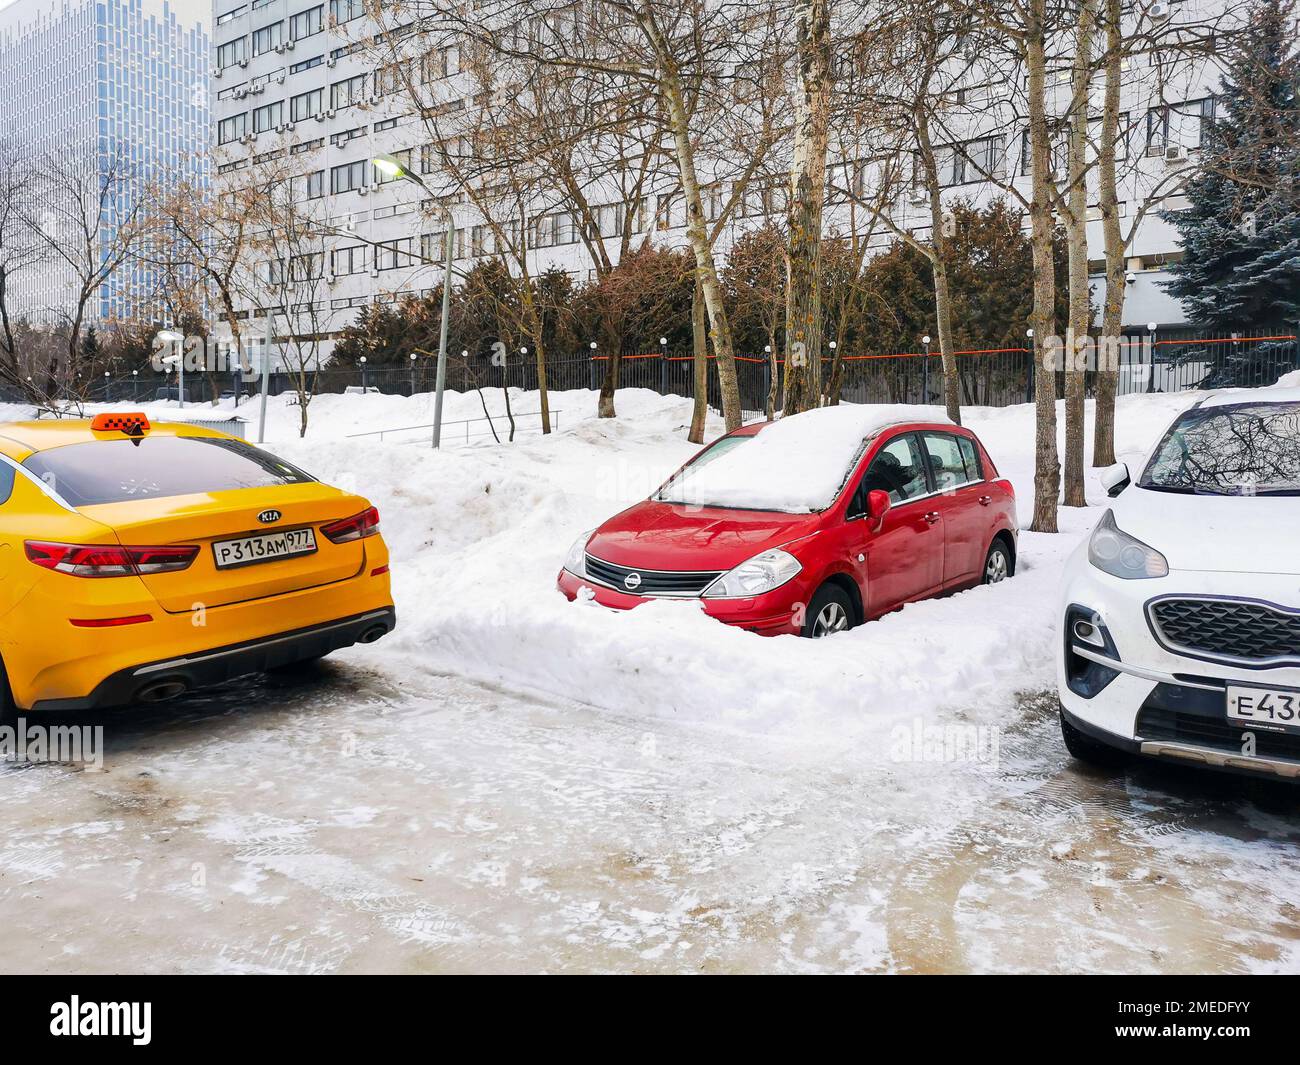 Mosca. Russia. Gennaio 23, 2023. Un'auto rossa Nissan Tiida è congelata in un mucchio di neve in un parcheggio cittadino. Foto Stock